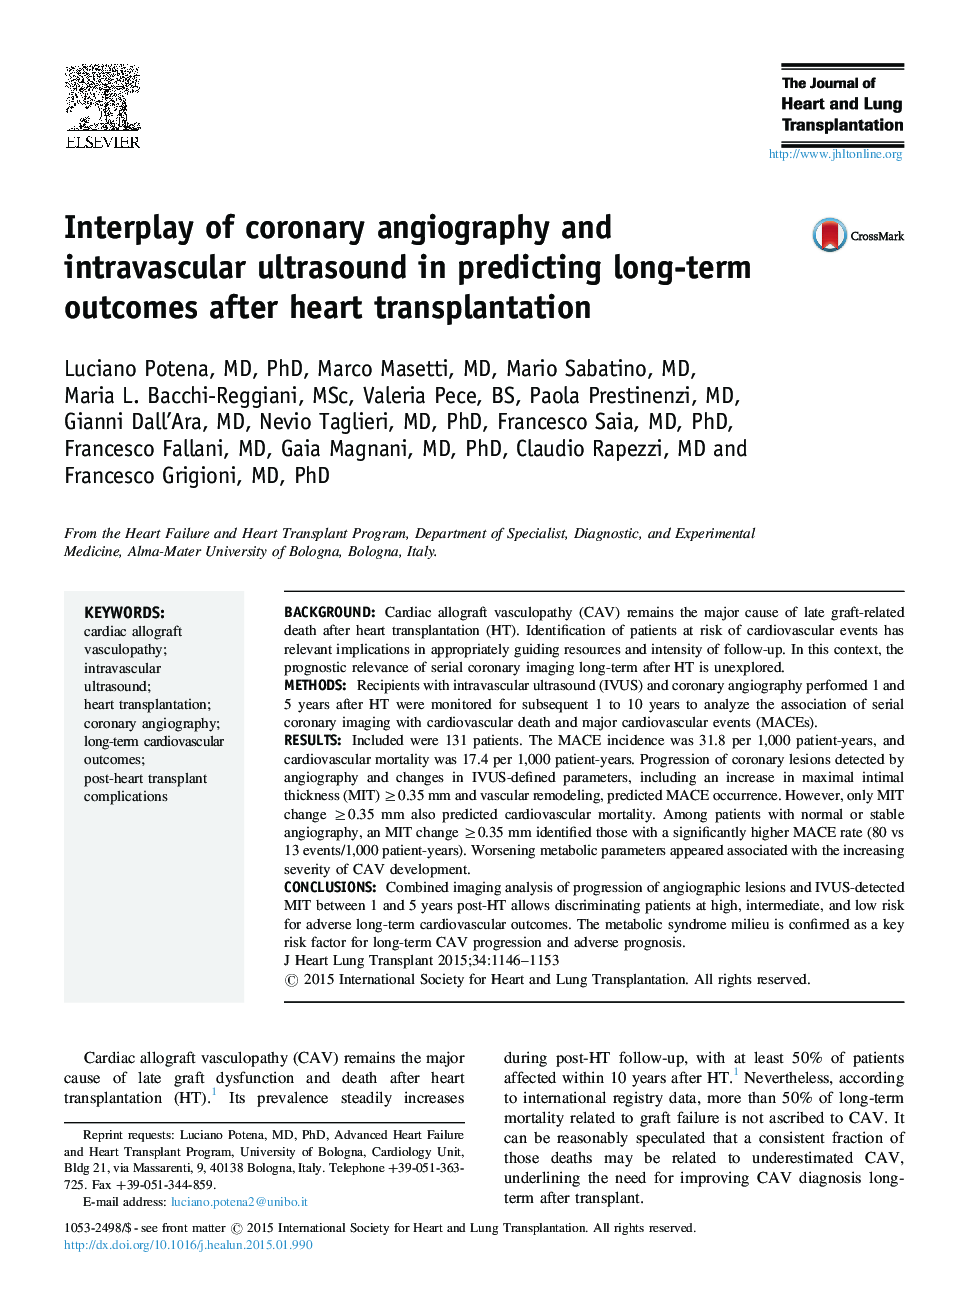 تعامل آنژیوگرافی عروق کرونر و سونوگرافی داخل عروق در پیش بینی نتایج بلند مدت پس از پیوند قلب 